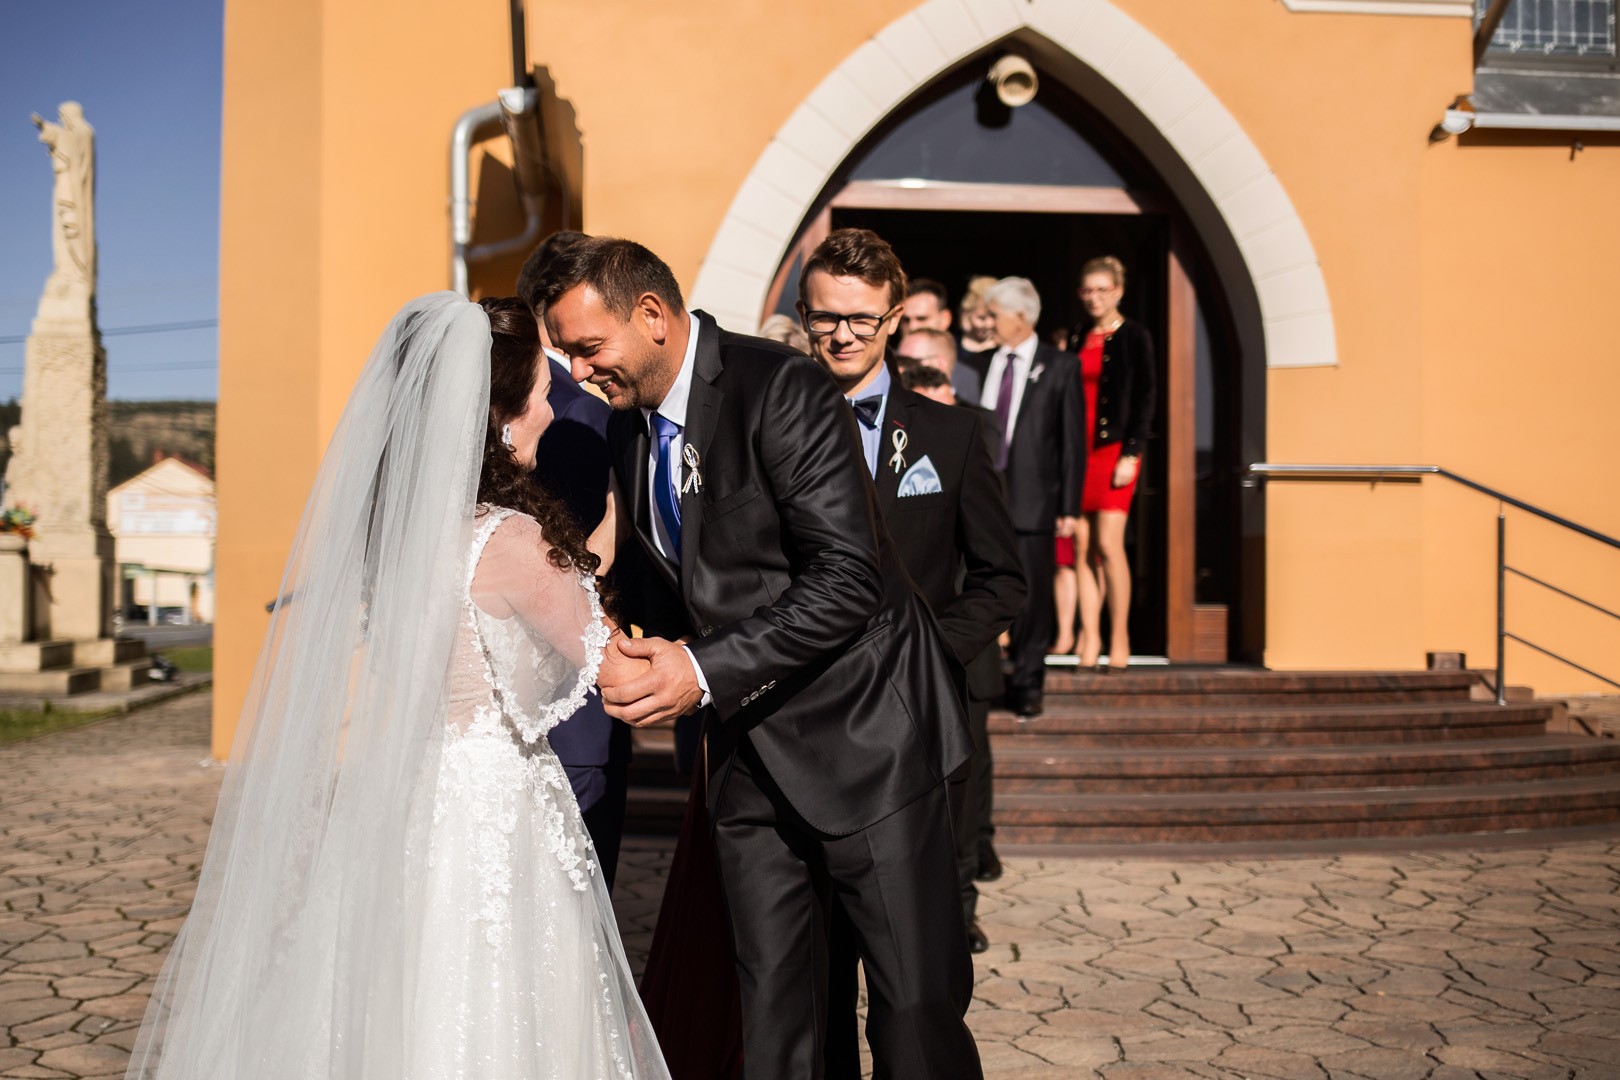 Wedding photos Zdenka and Marko - 0184.jpg